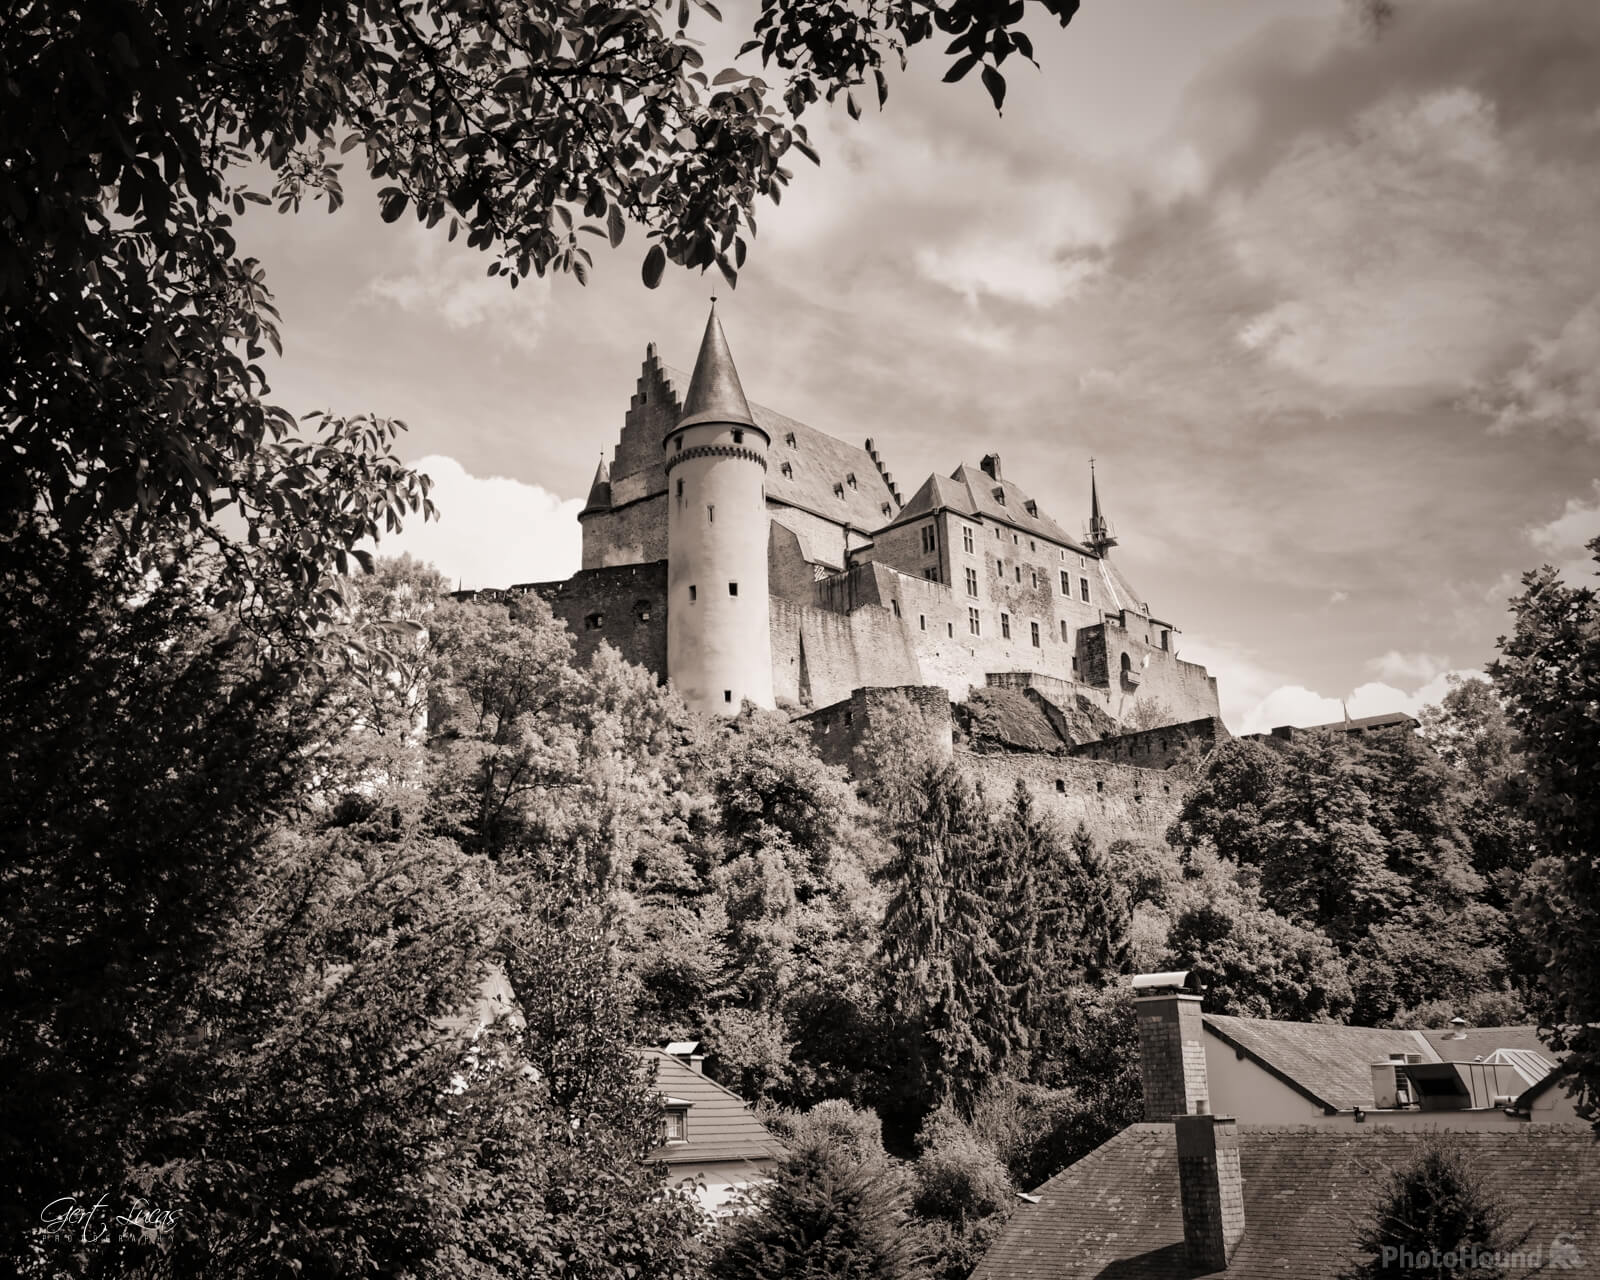 Image of Vianden Castle by Gert Lucas